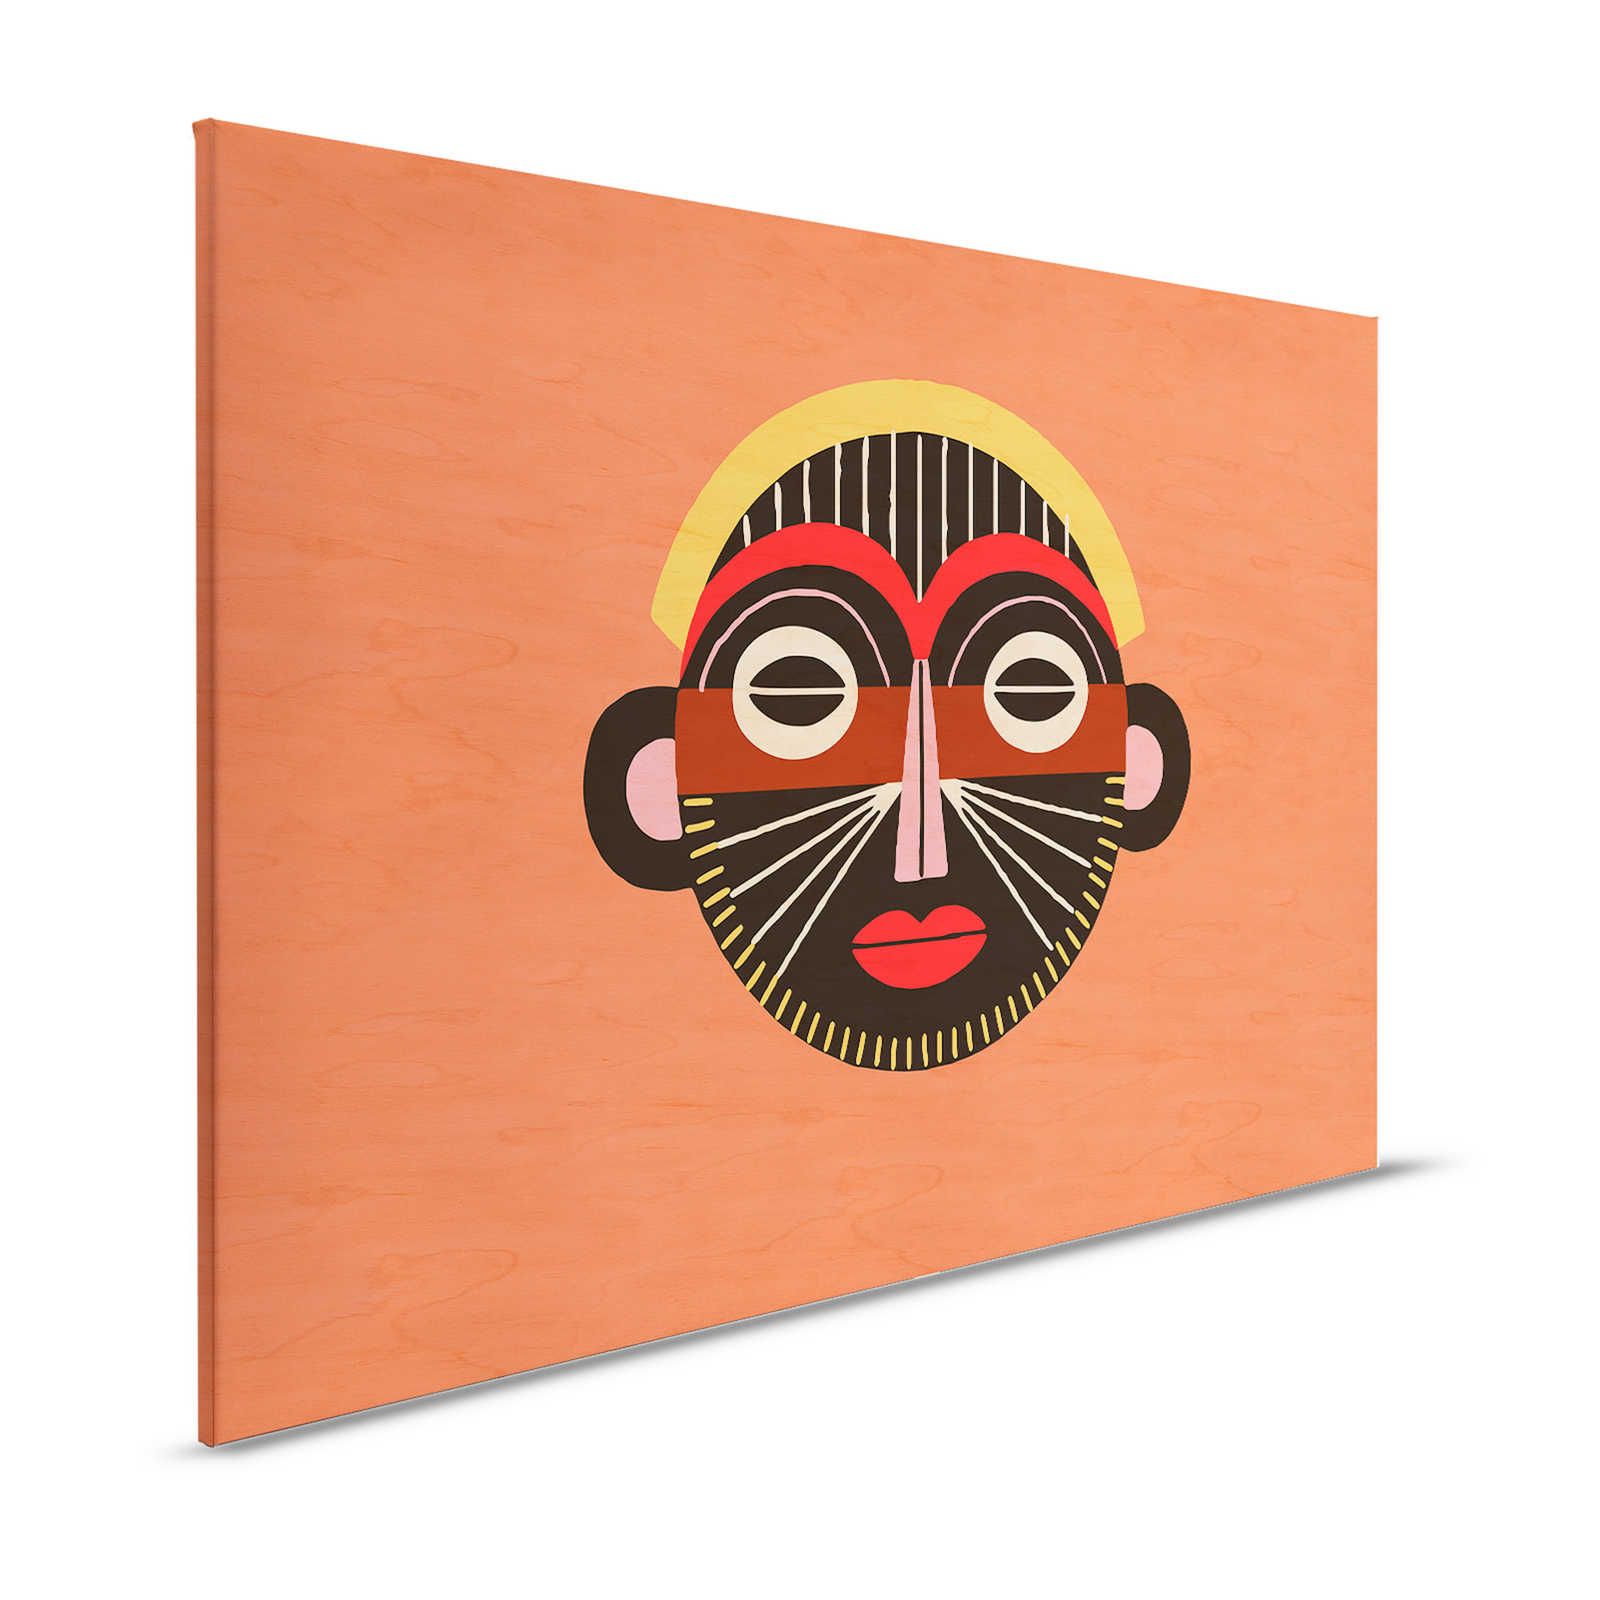 Overseas 2 - Ethno Canvas schildersmasker in Tribal Design - 1.20 m x 0.80 m
